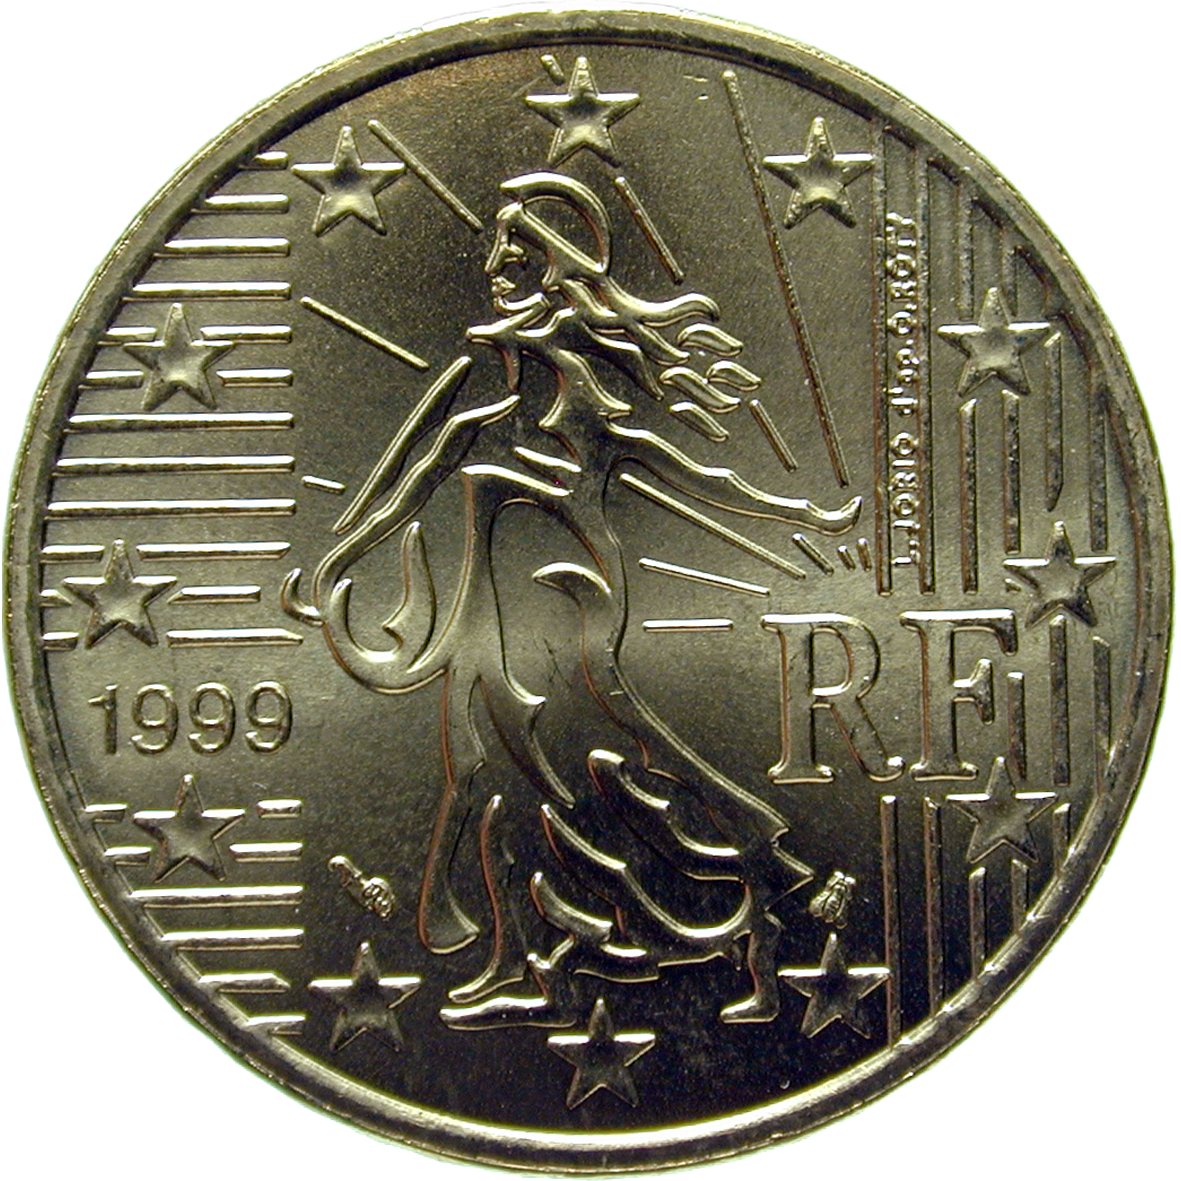 Republik Frankreich, 50 Eurocent 1999 (reverse)